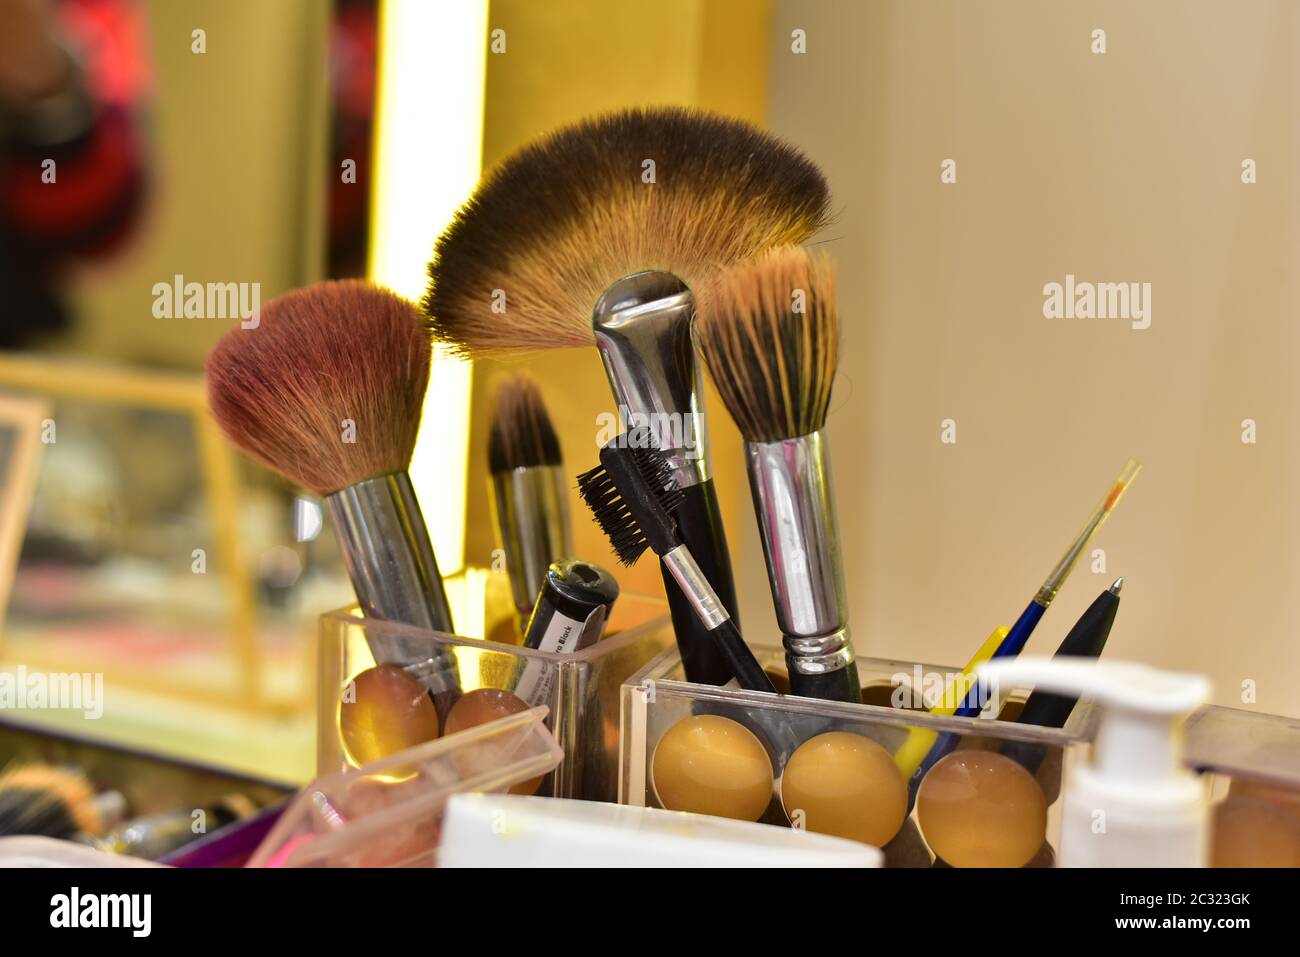 Professional Make-up brushes Stock Photo